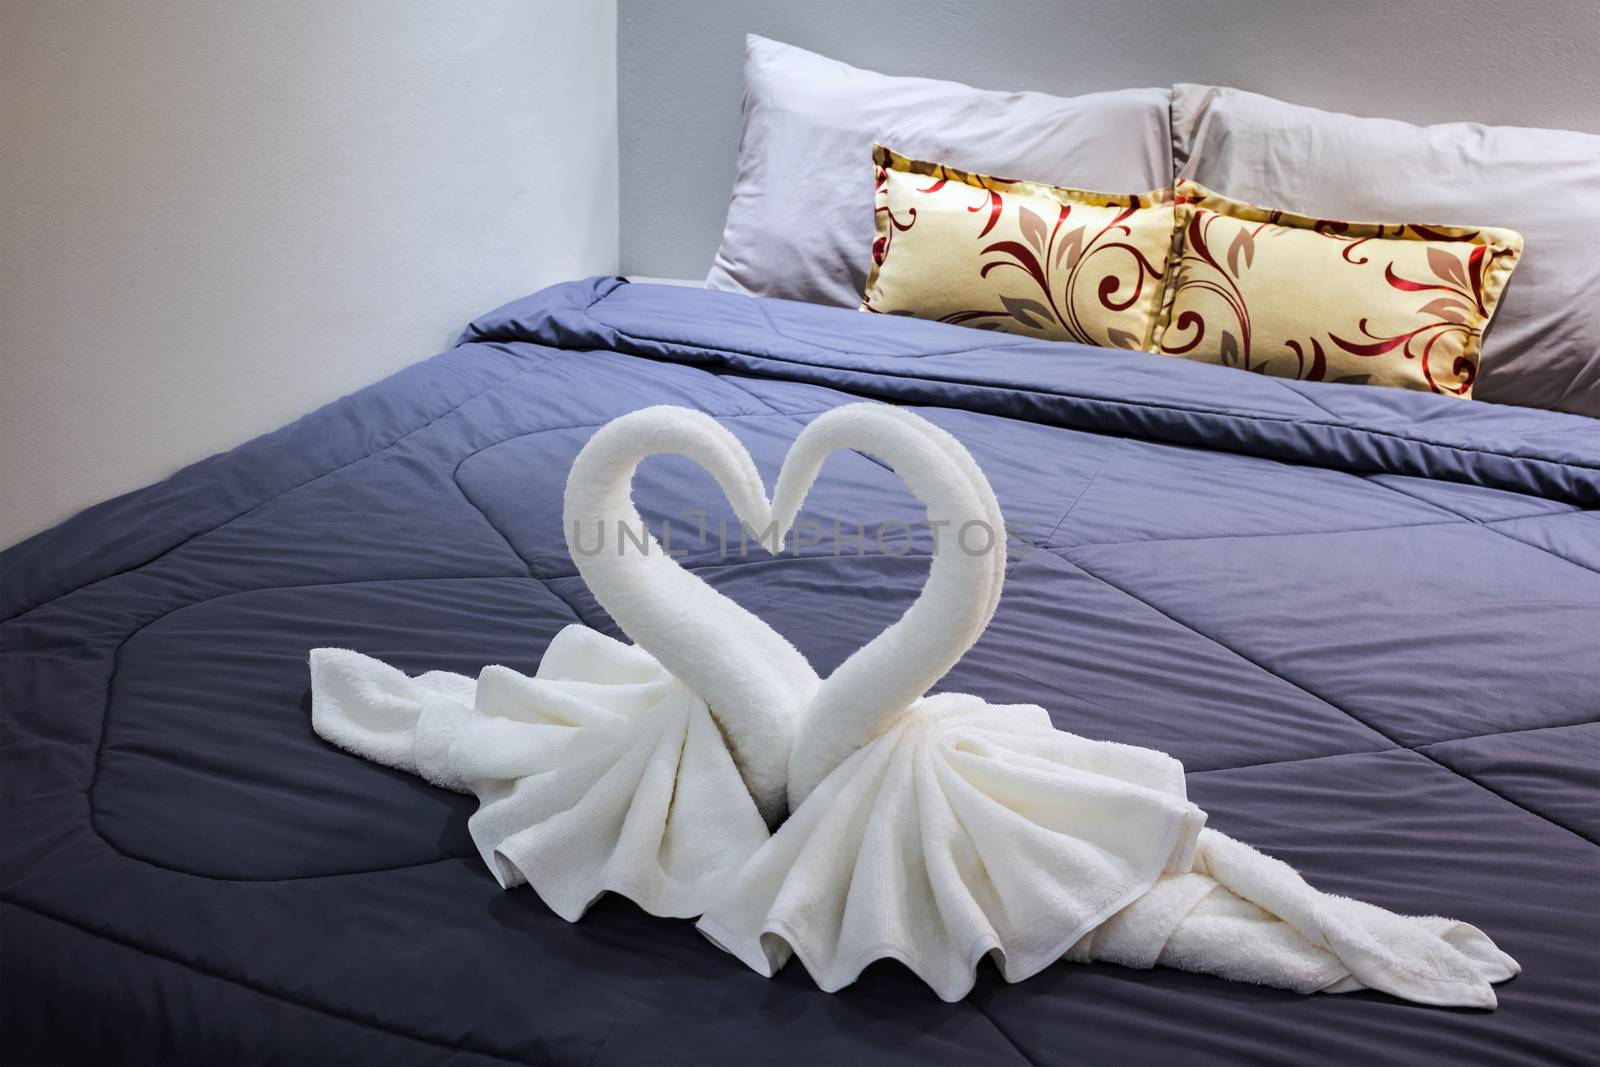 towel folded in swan shape on bed sheet by FrameAngel